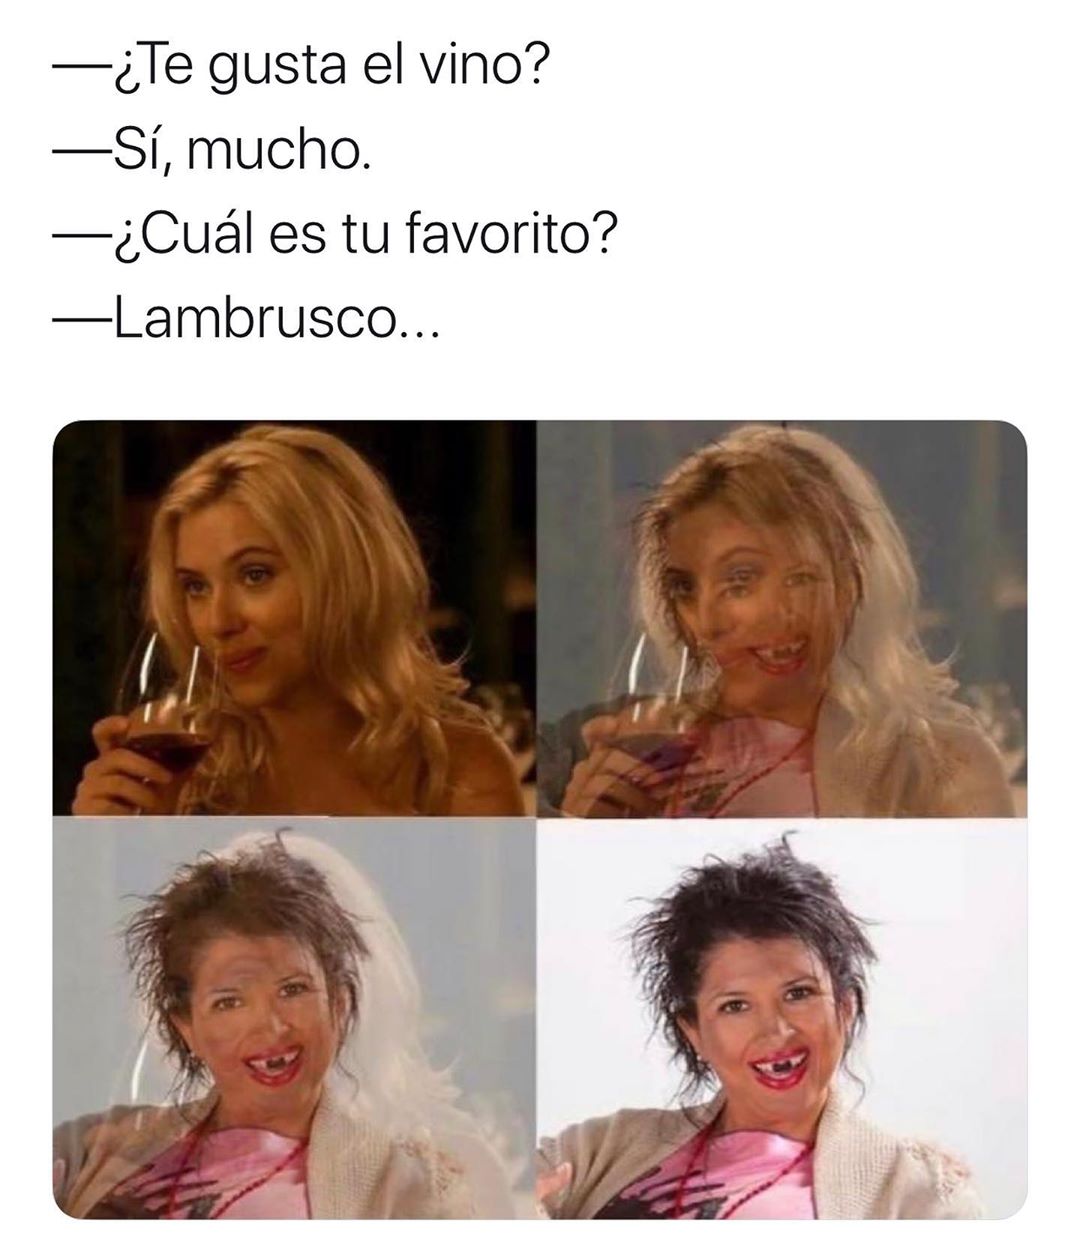 ¿Te gusta el vino?  Sí, mucho.  ¿Cuál es tu favorito?  Lambrusco...